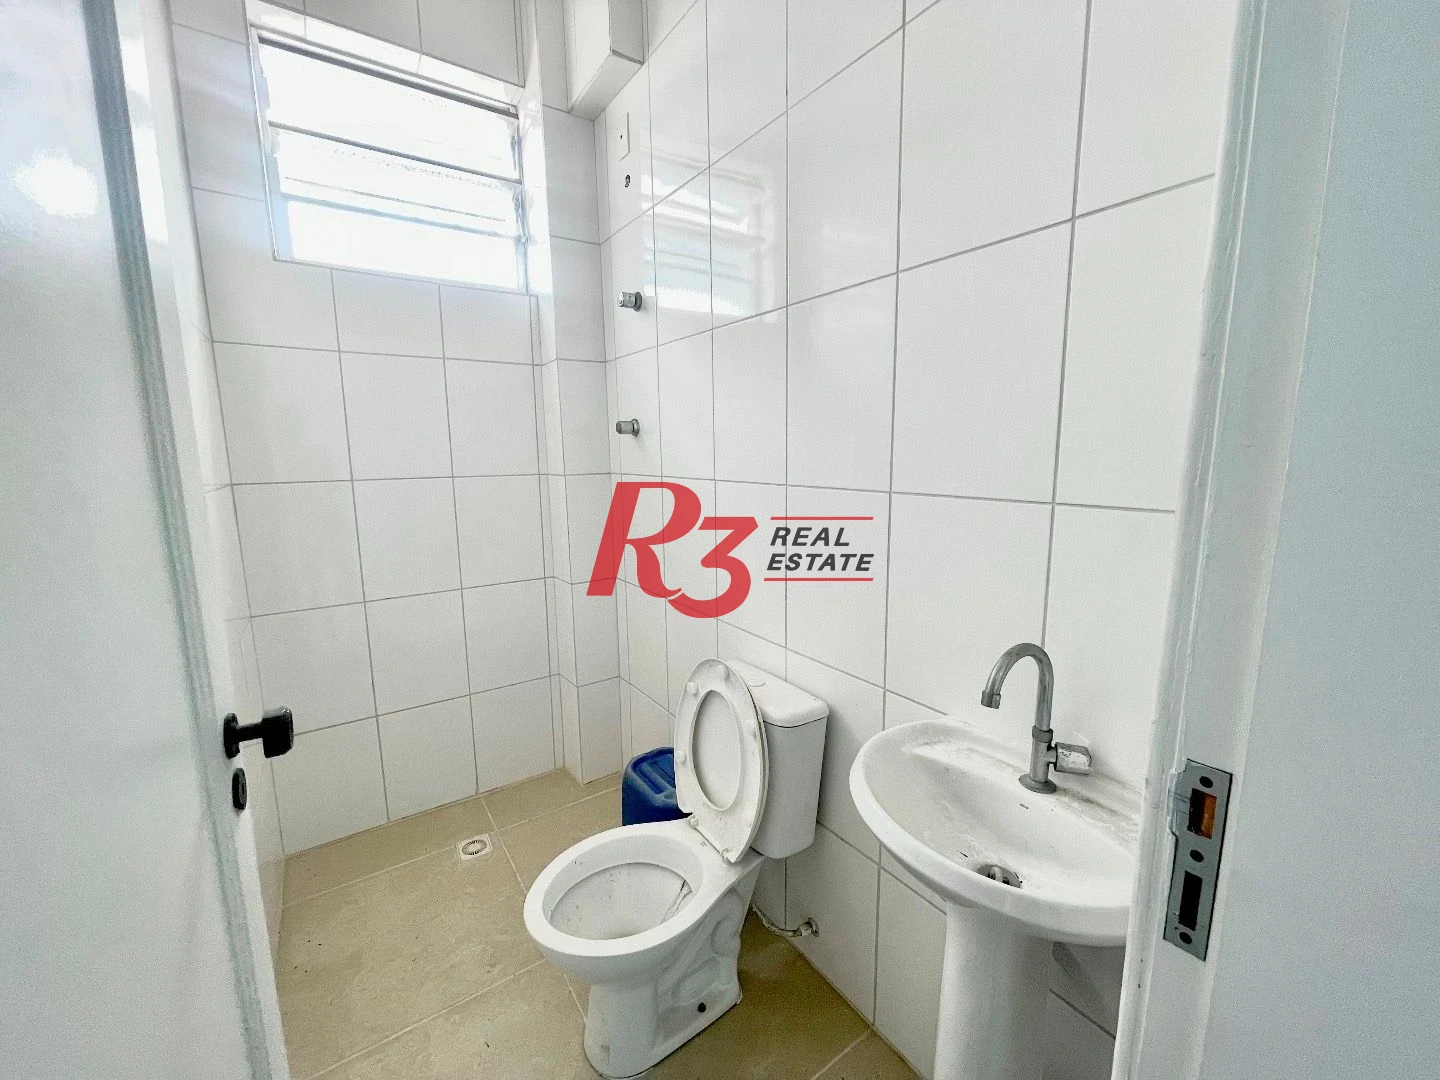 Sala para alugar, 40 m² por R$ 2.500,00/mês - Aparecida - Santos/SP